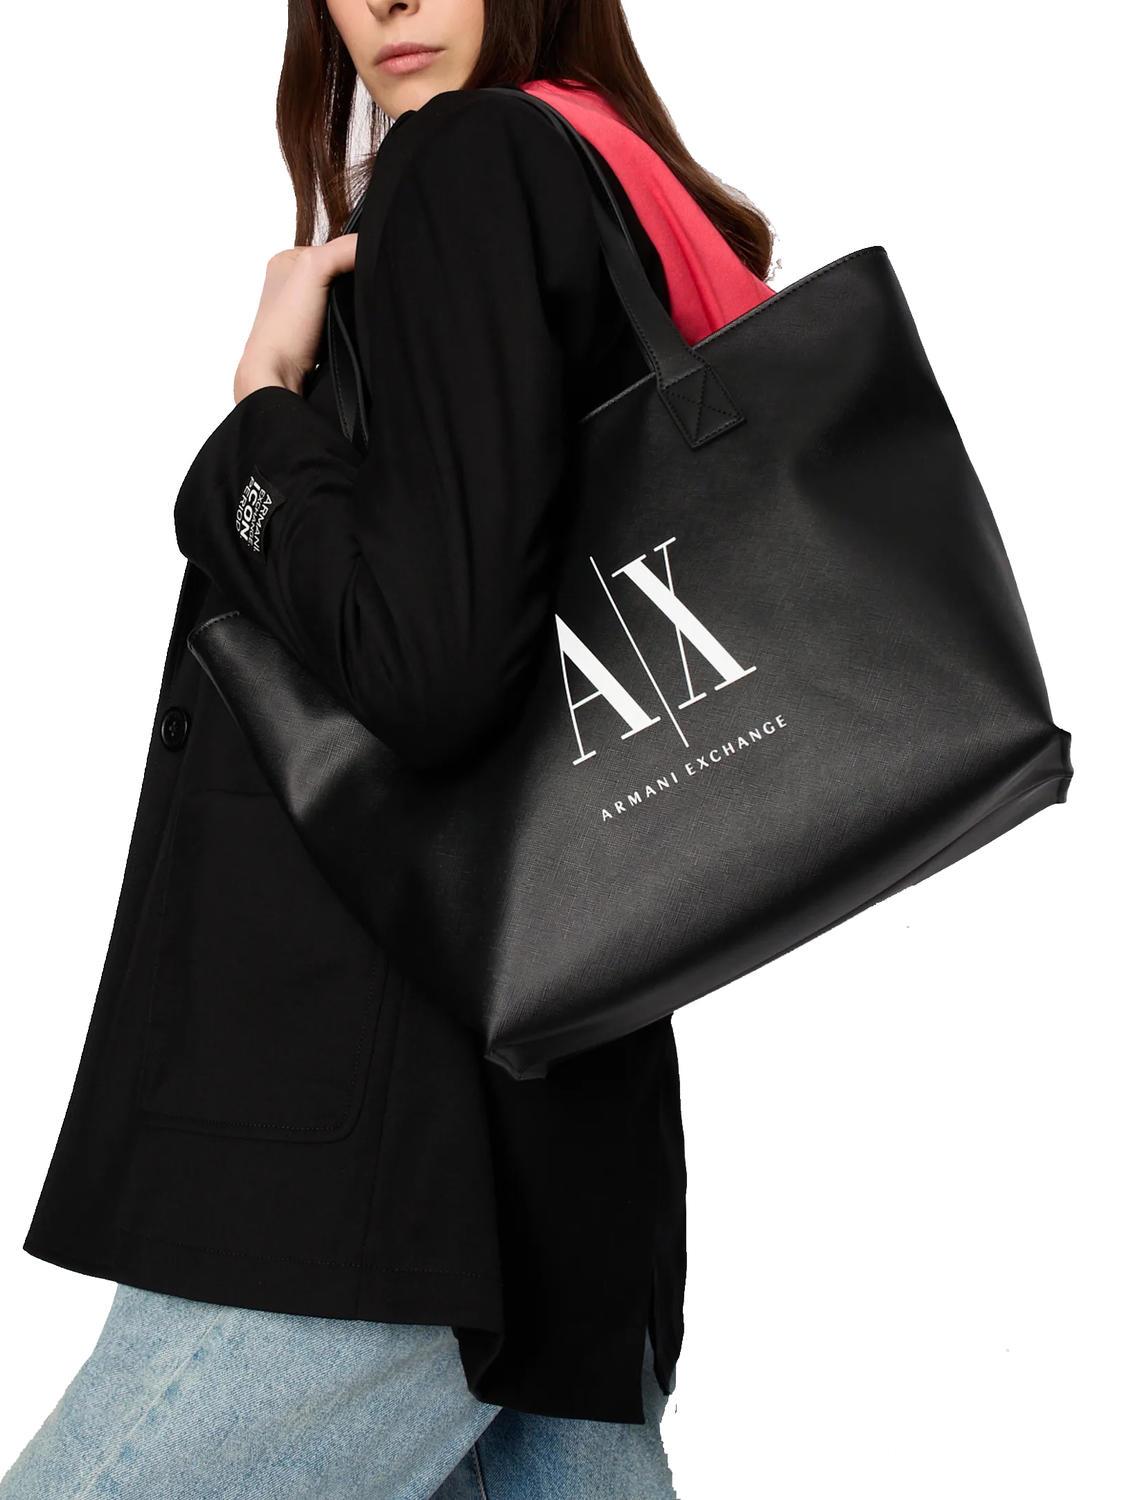 EMPORIO ARMANI Grained faux leather tote: Handbags: Amazon.com